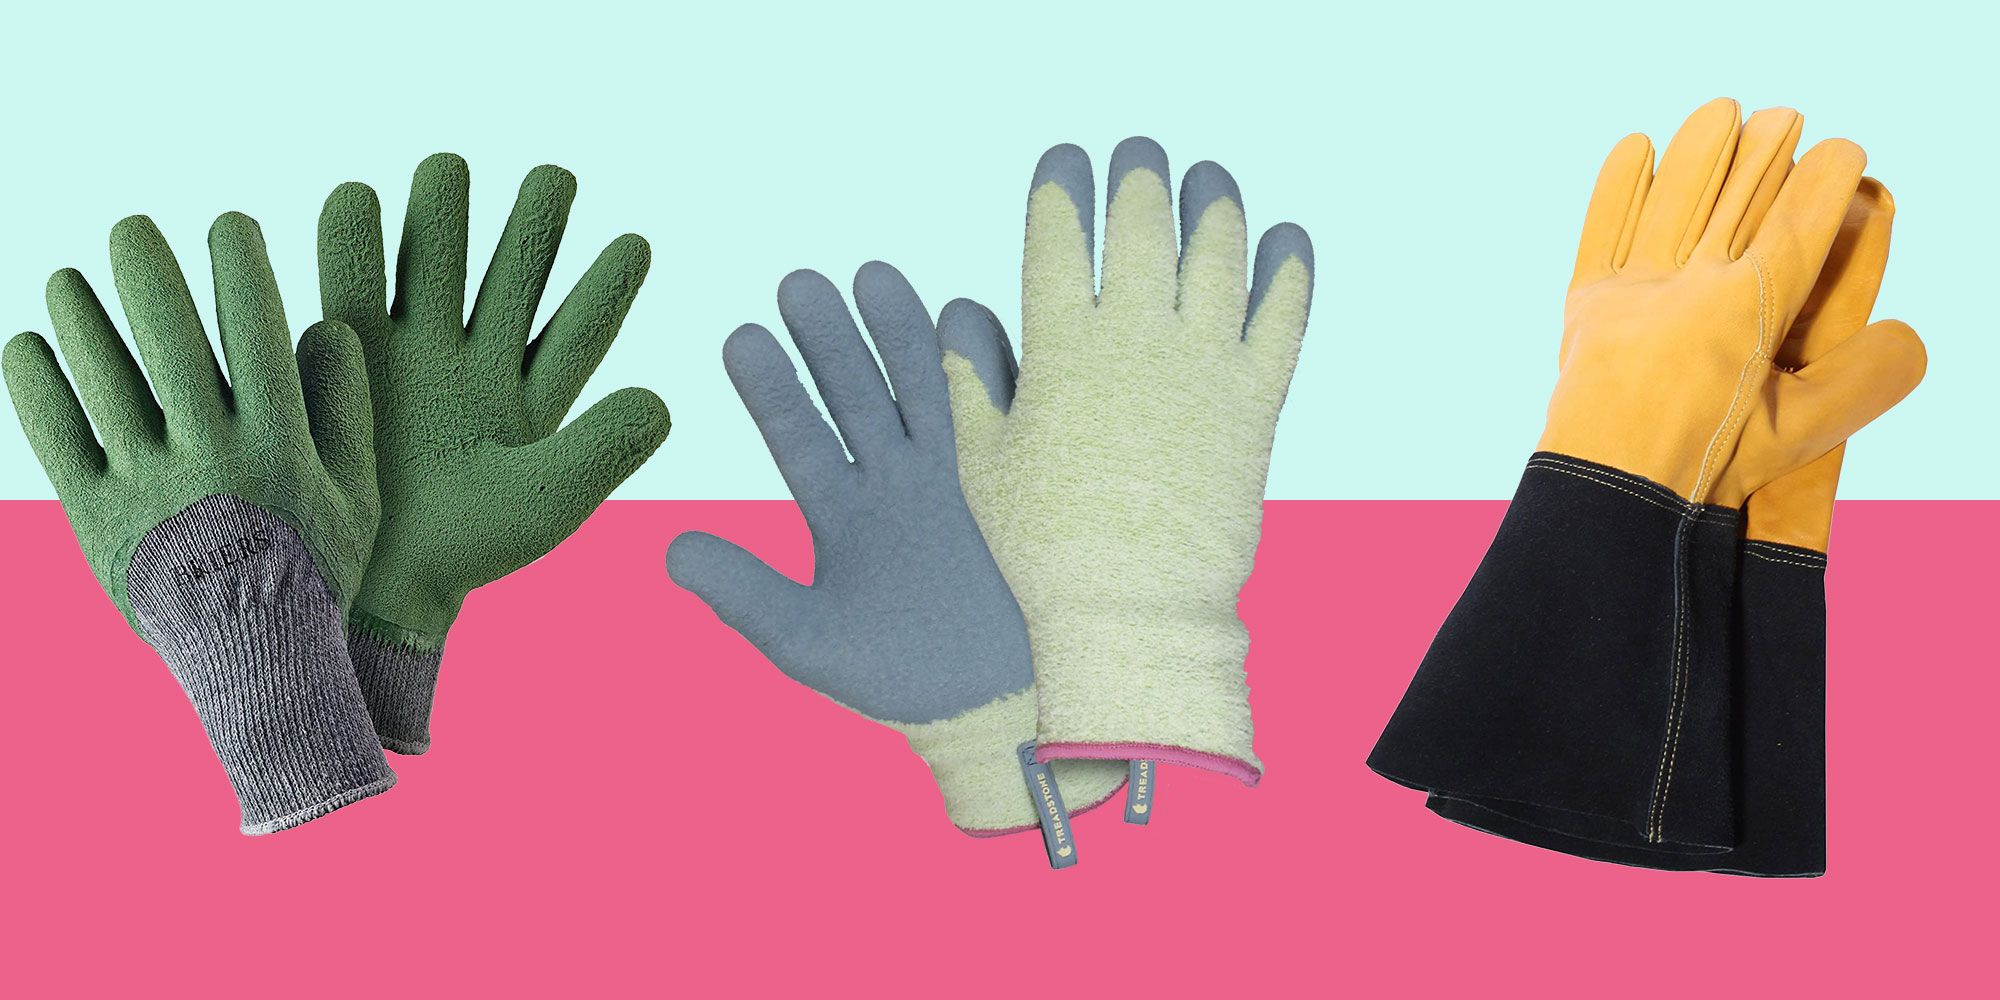 Best Gardening Gloves 10 Of The Best Gardening Gloves In 2020